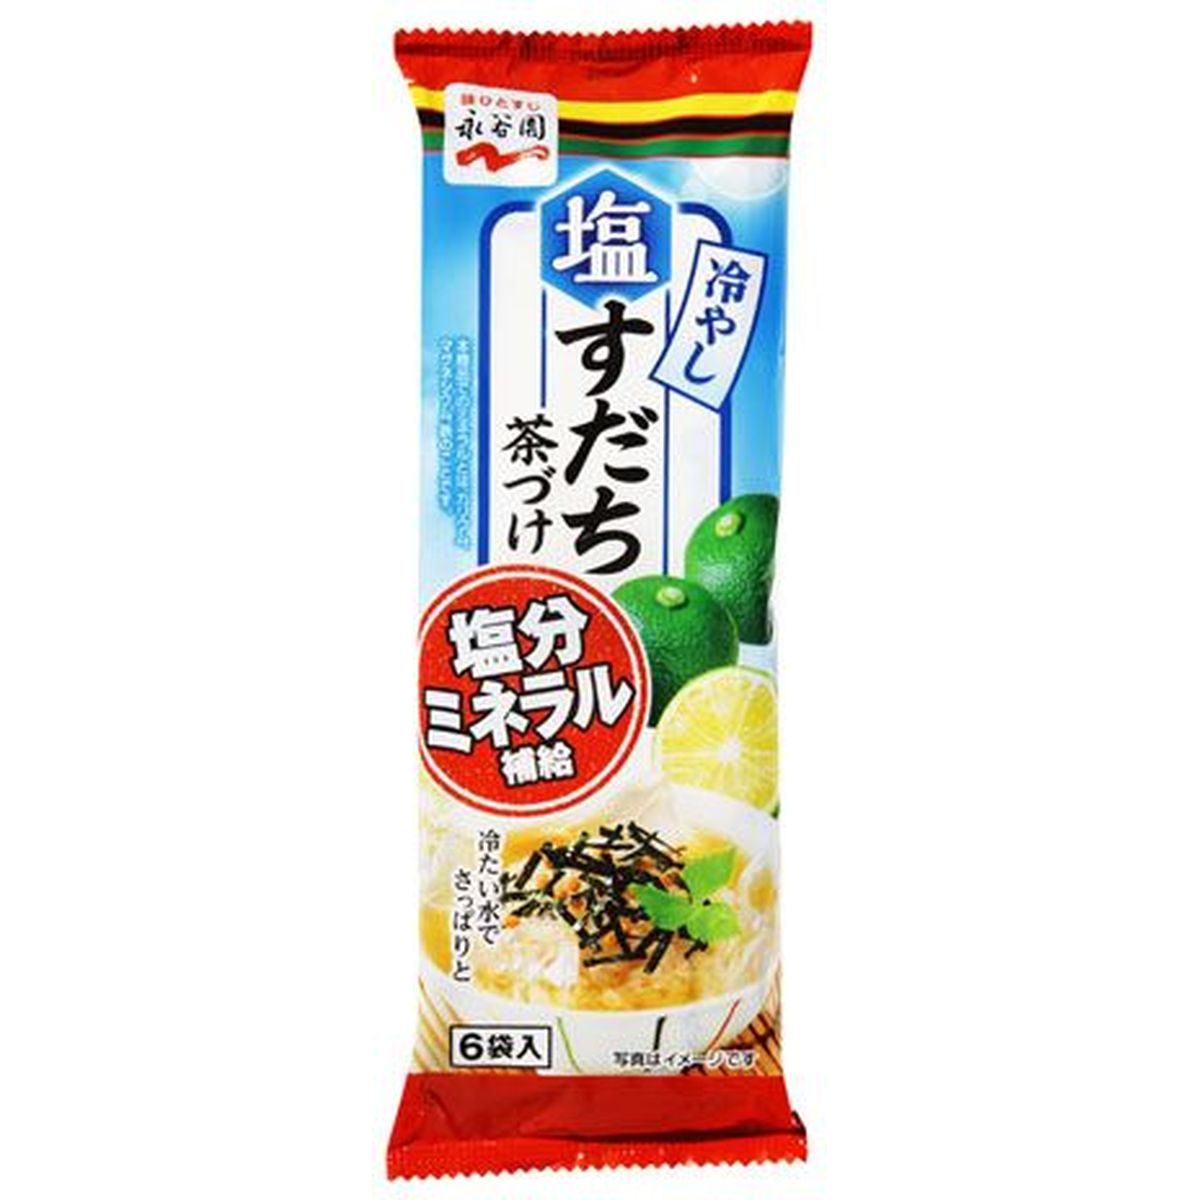 【10個入リ】永谷園 冷ヤシ塩スダチ茶ヅケ 33.6g